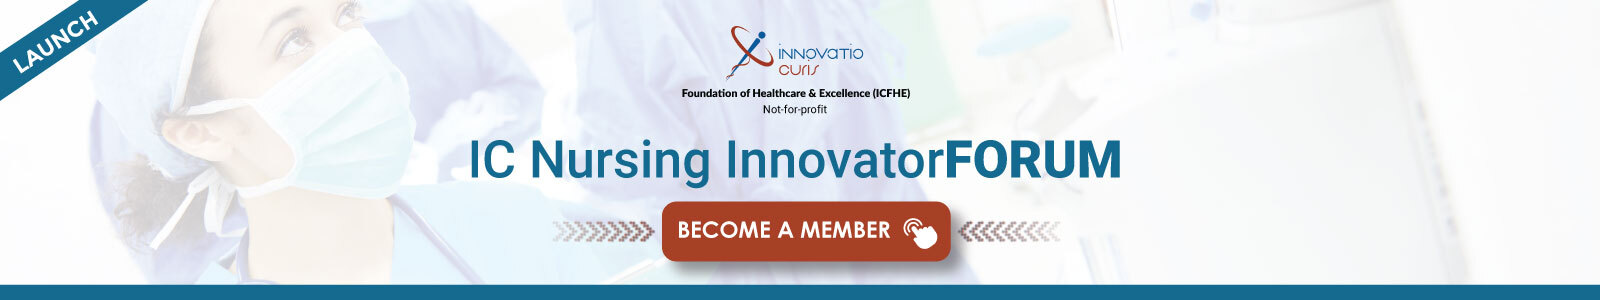 IC-Nursing-InnovatorFORUM